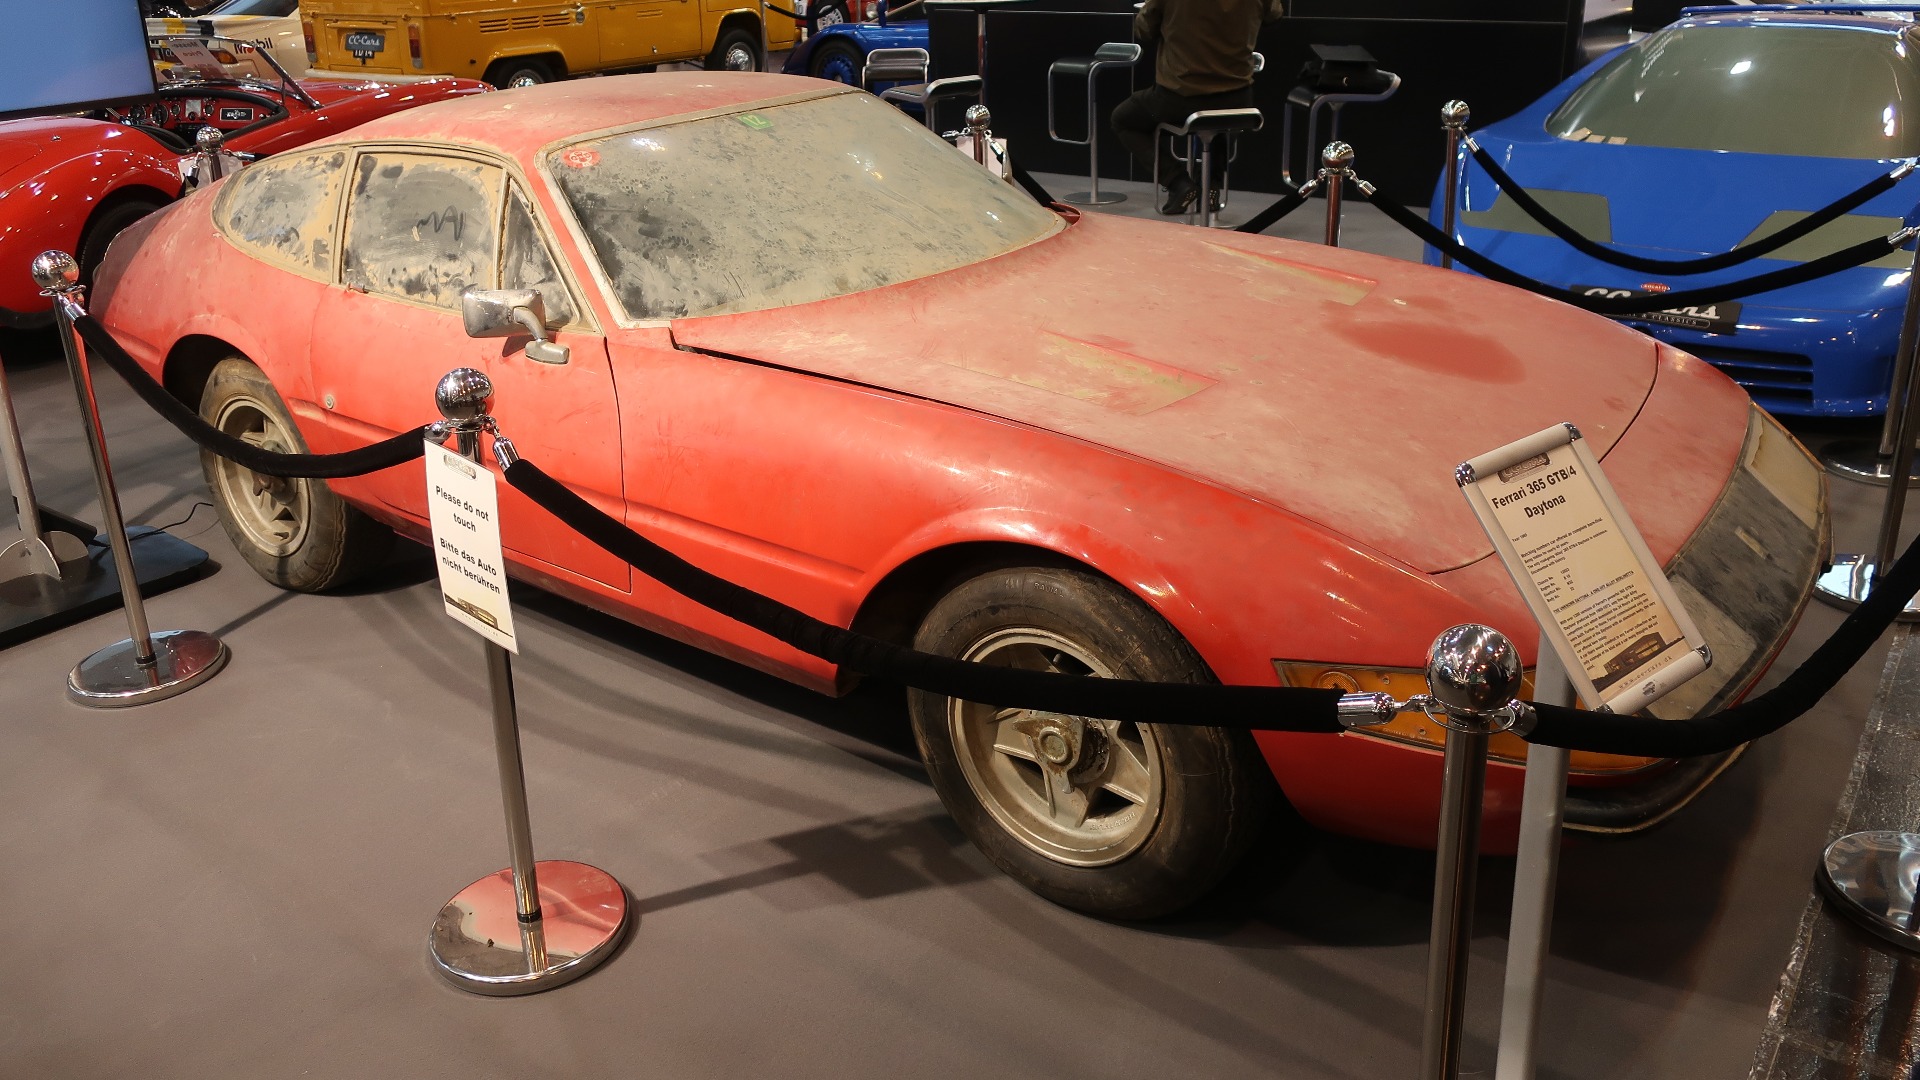 Det berømte låvefunnet av en Ferrari Daytona som dukket opp på Retromobile for noen år siden. Fortsatt ser den ut som et låvefunn.